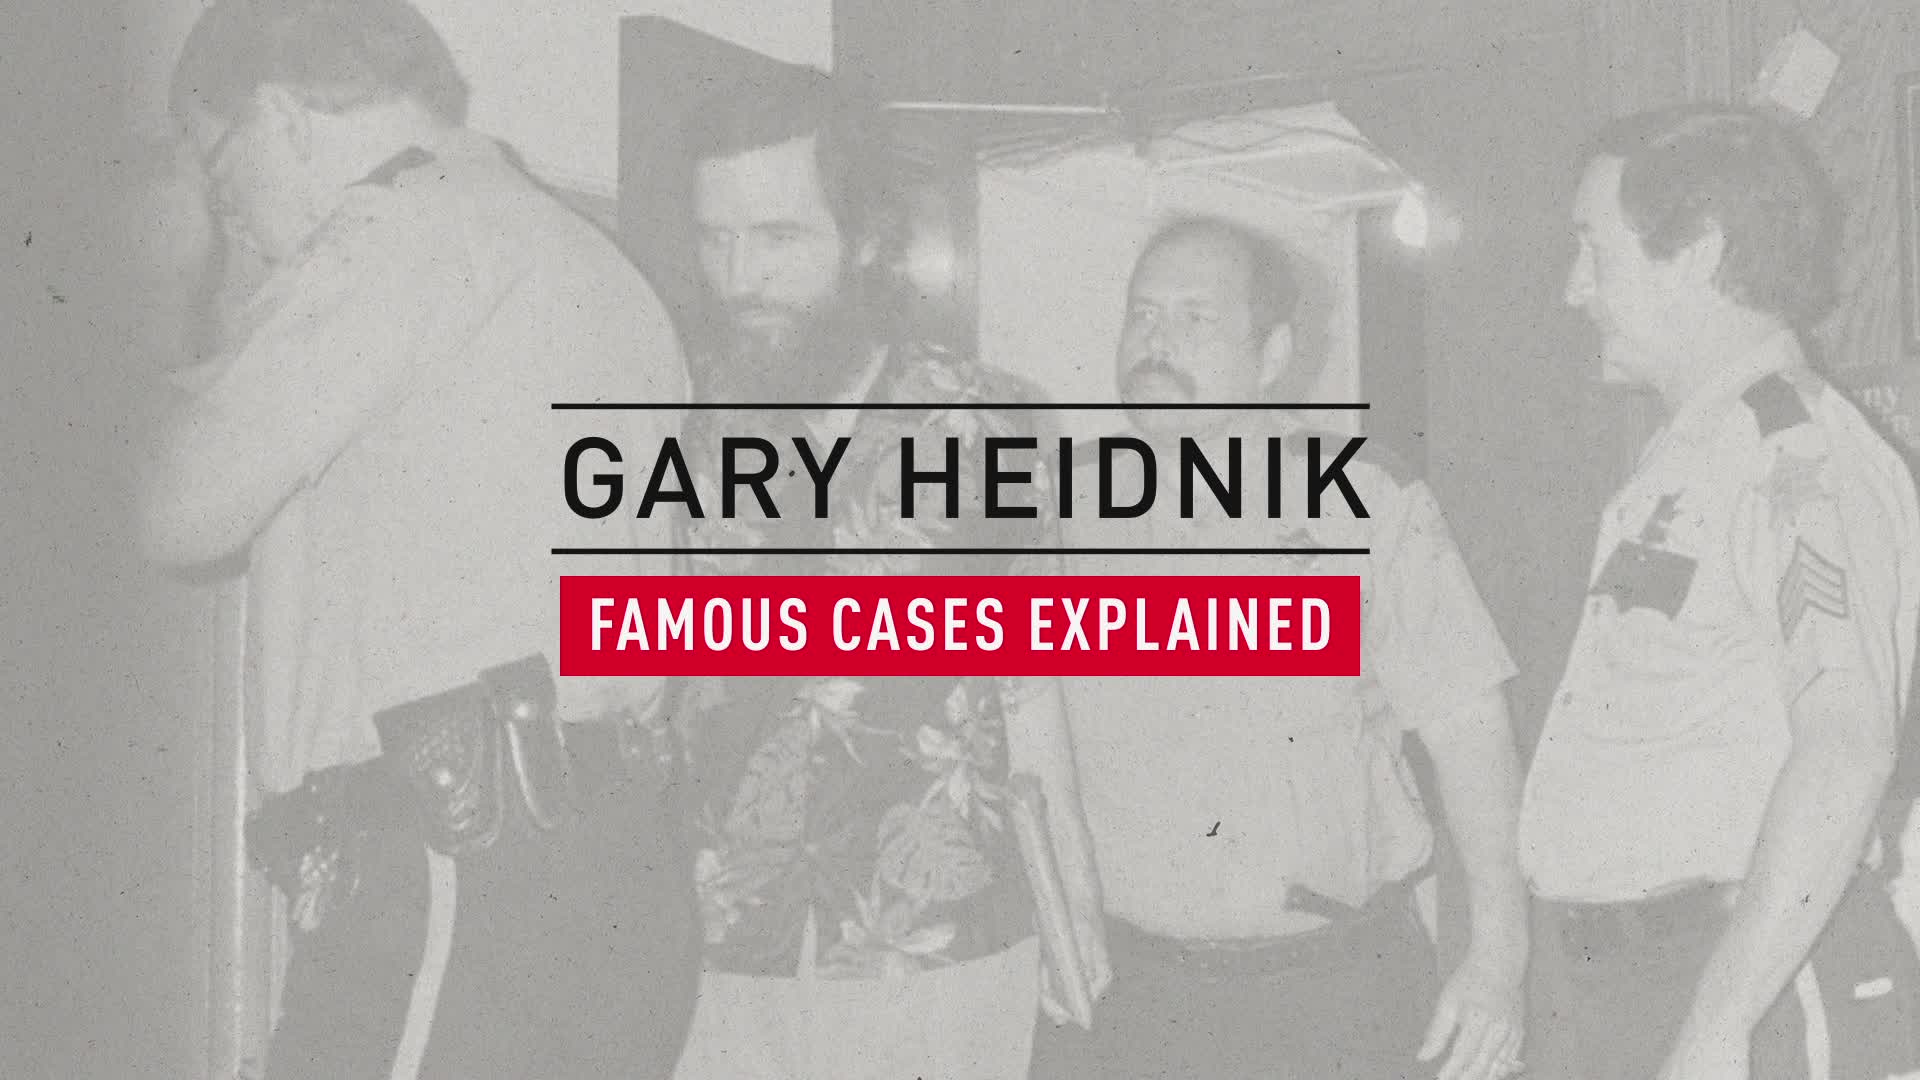 The Gary Heidnik ‘House Of Horrors’ Case, Explained